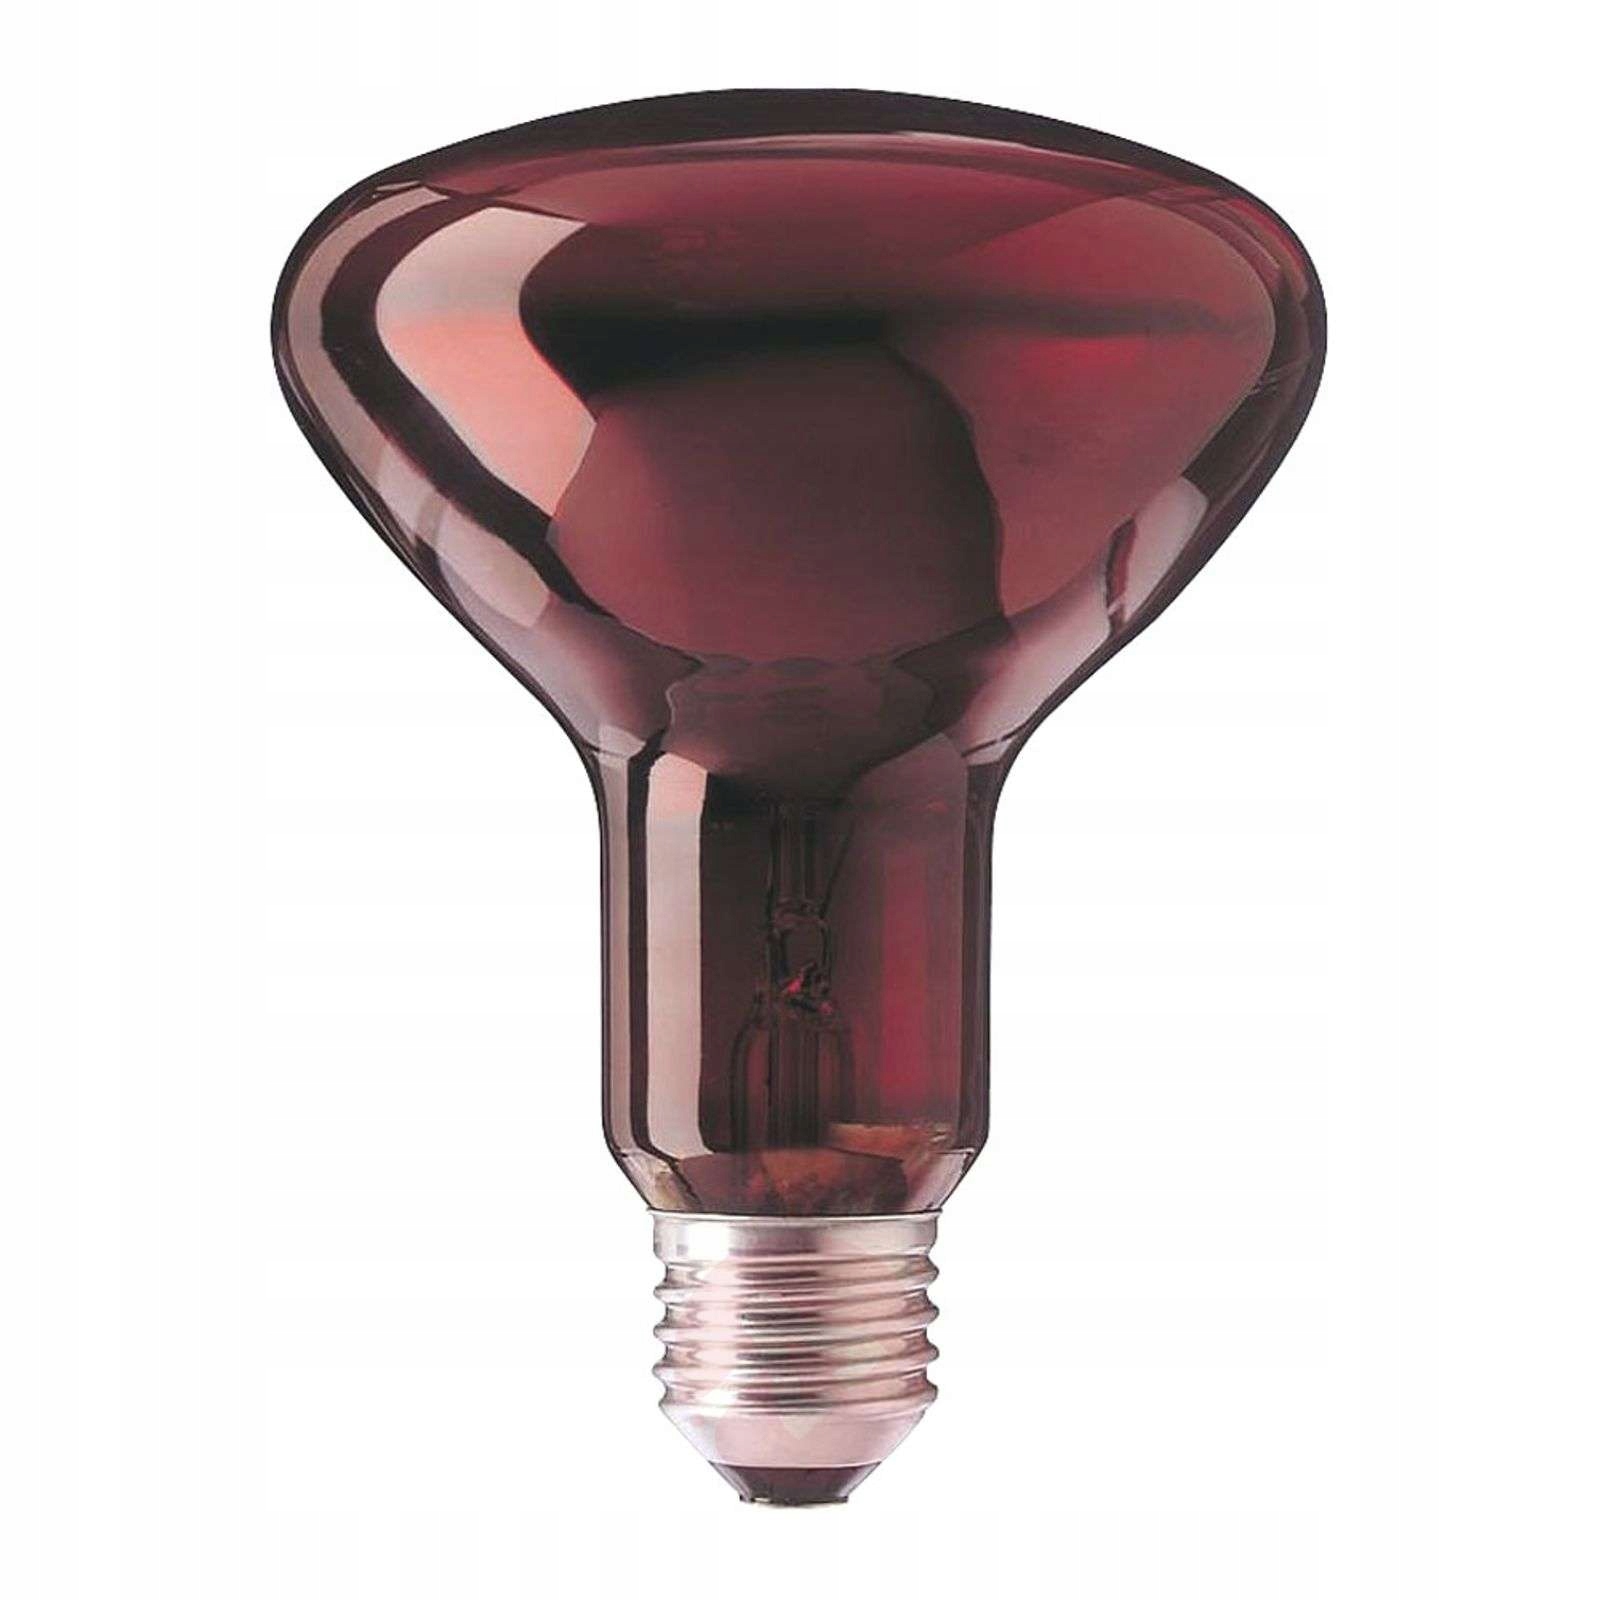 Инфракрасная лампа: конструкция обогревателя, преимущества и виды приборов, применение для домашнего отопления